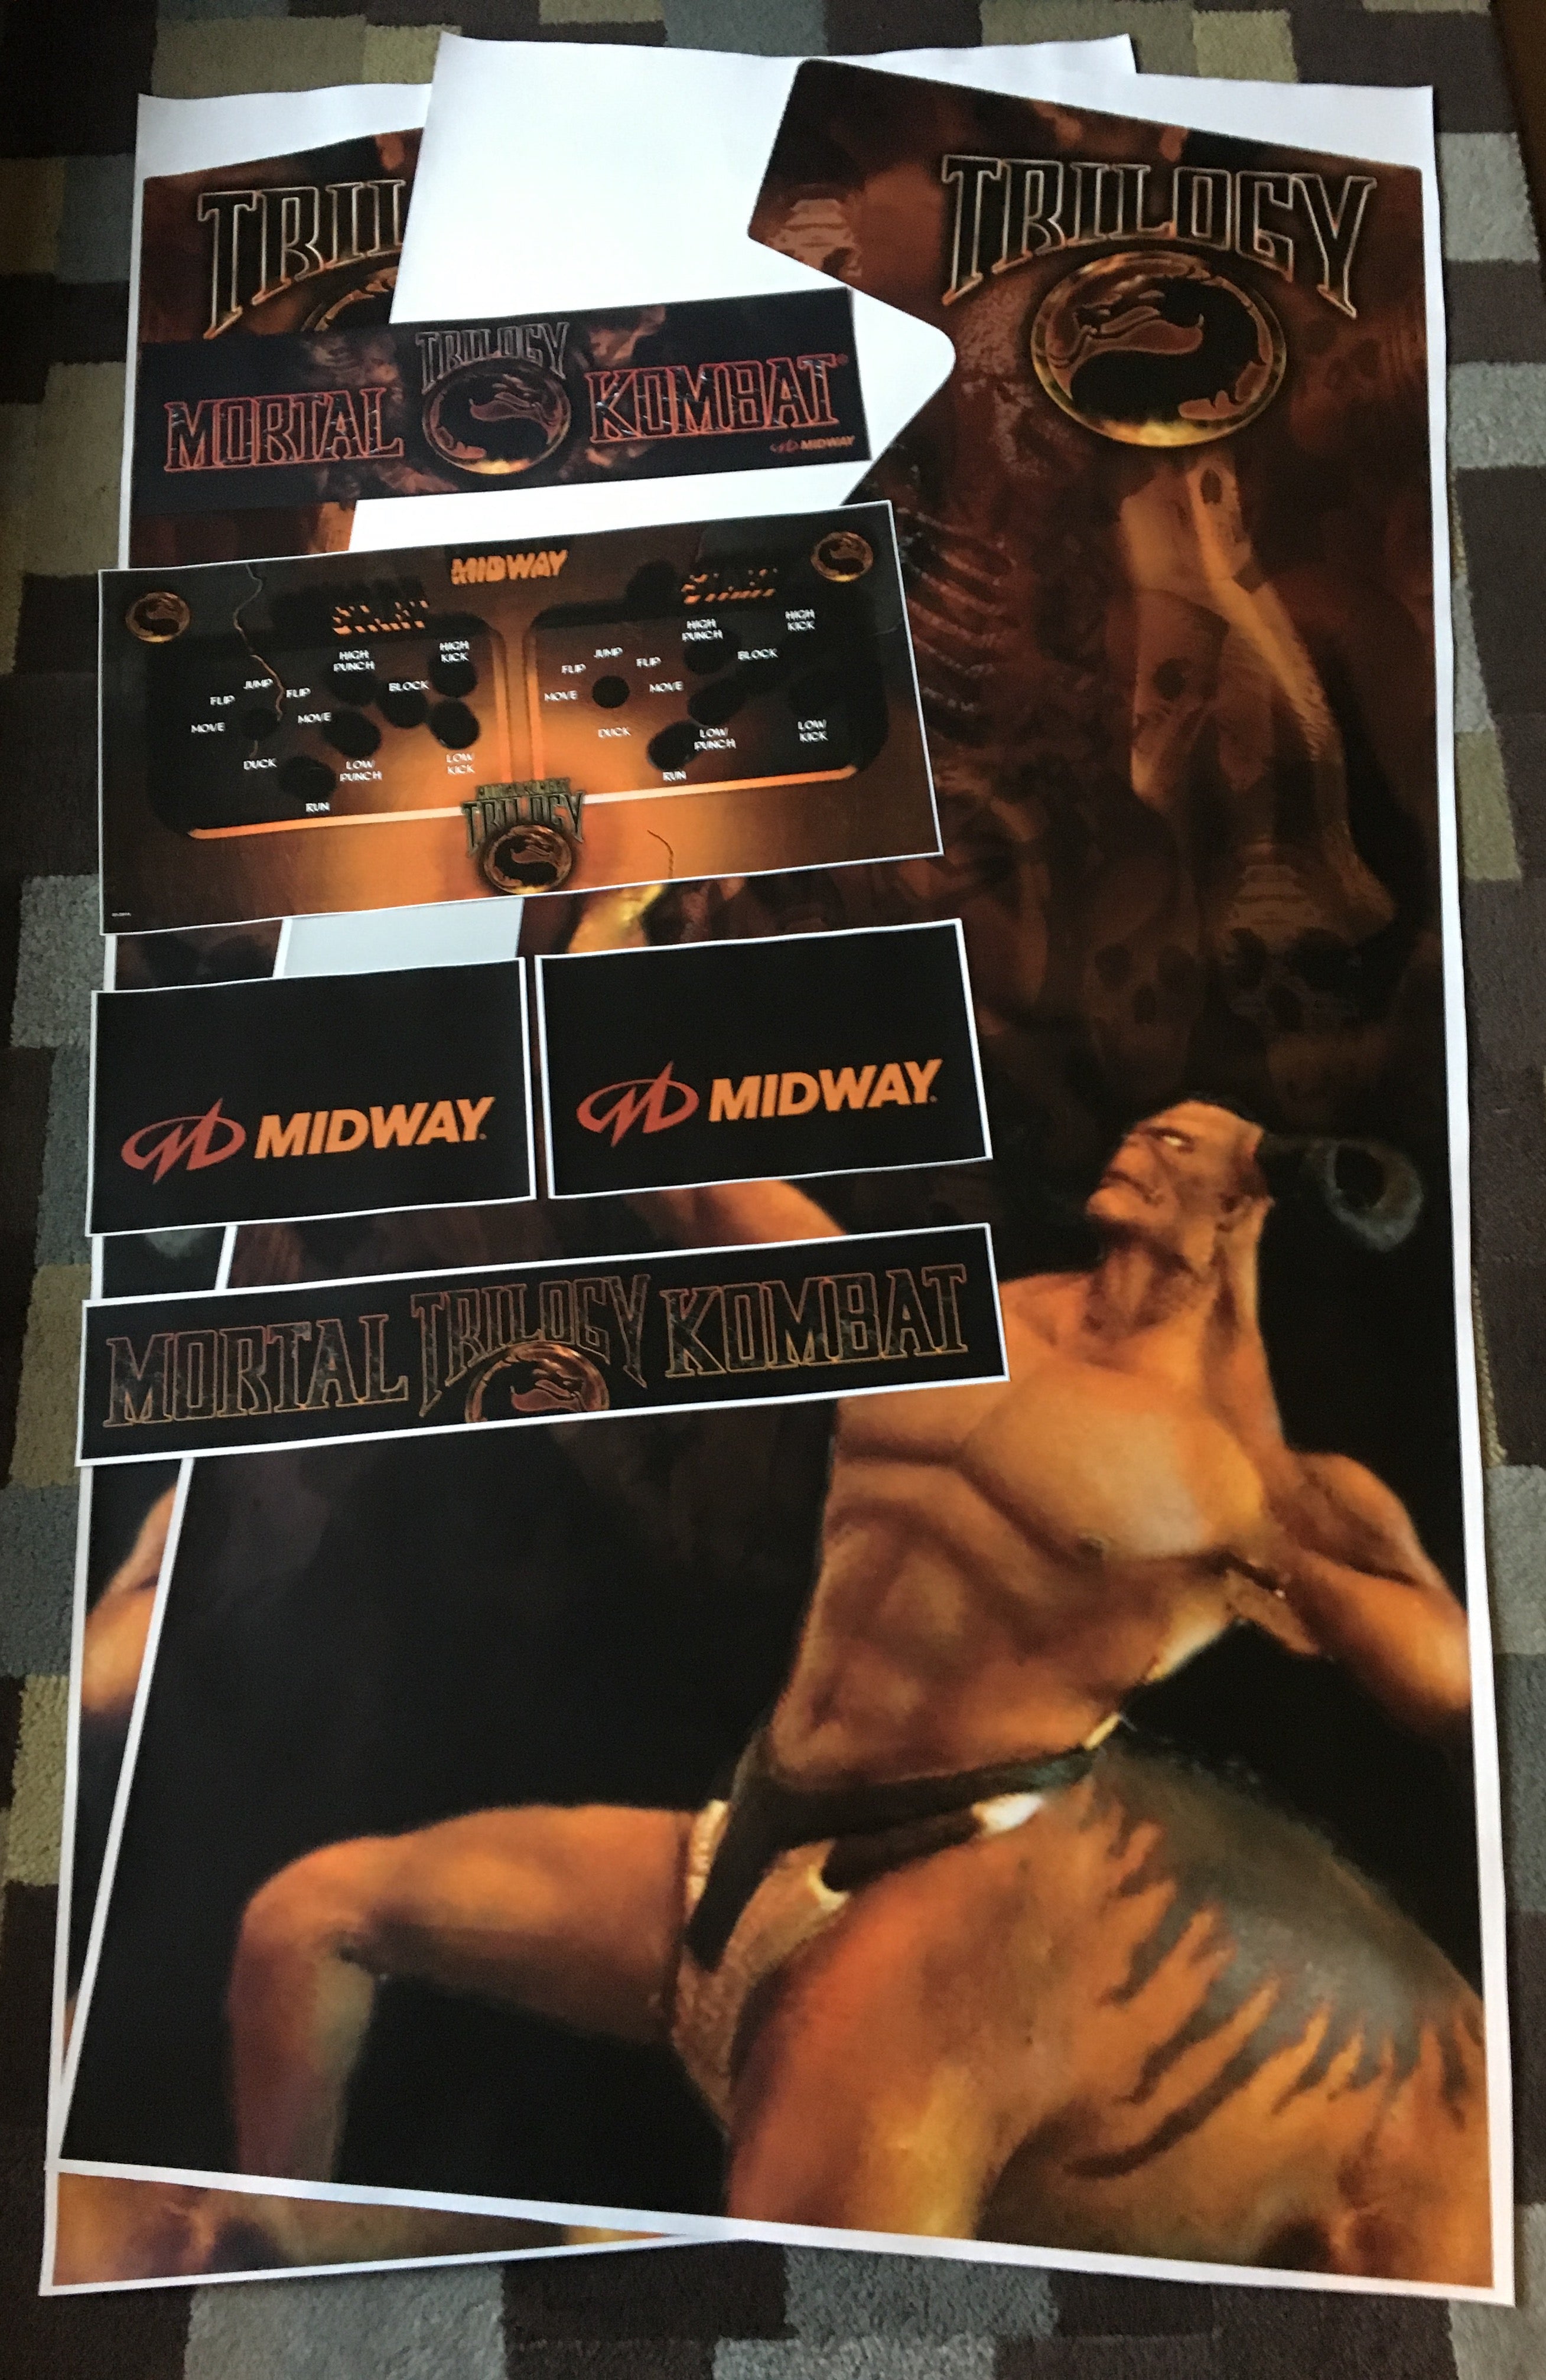 Kit artistique complet de la trilogie Mortal Kombat